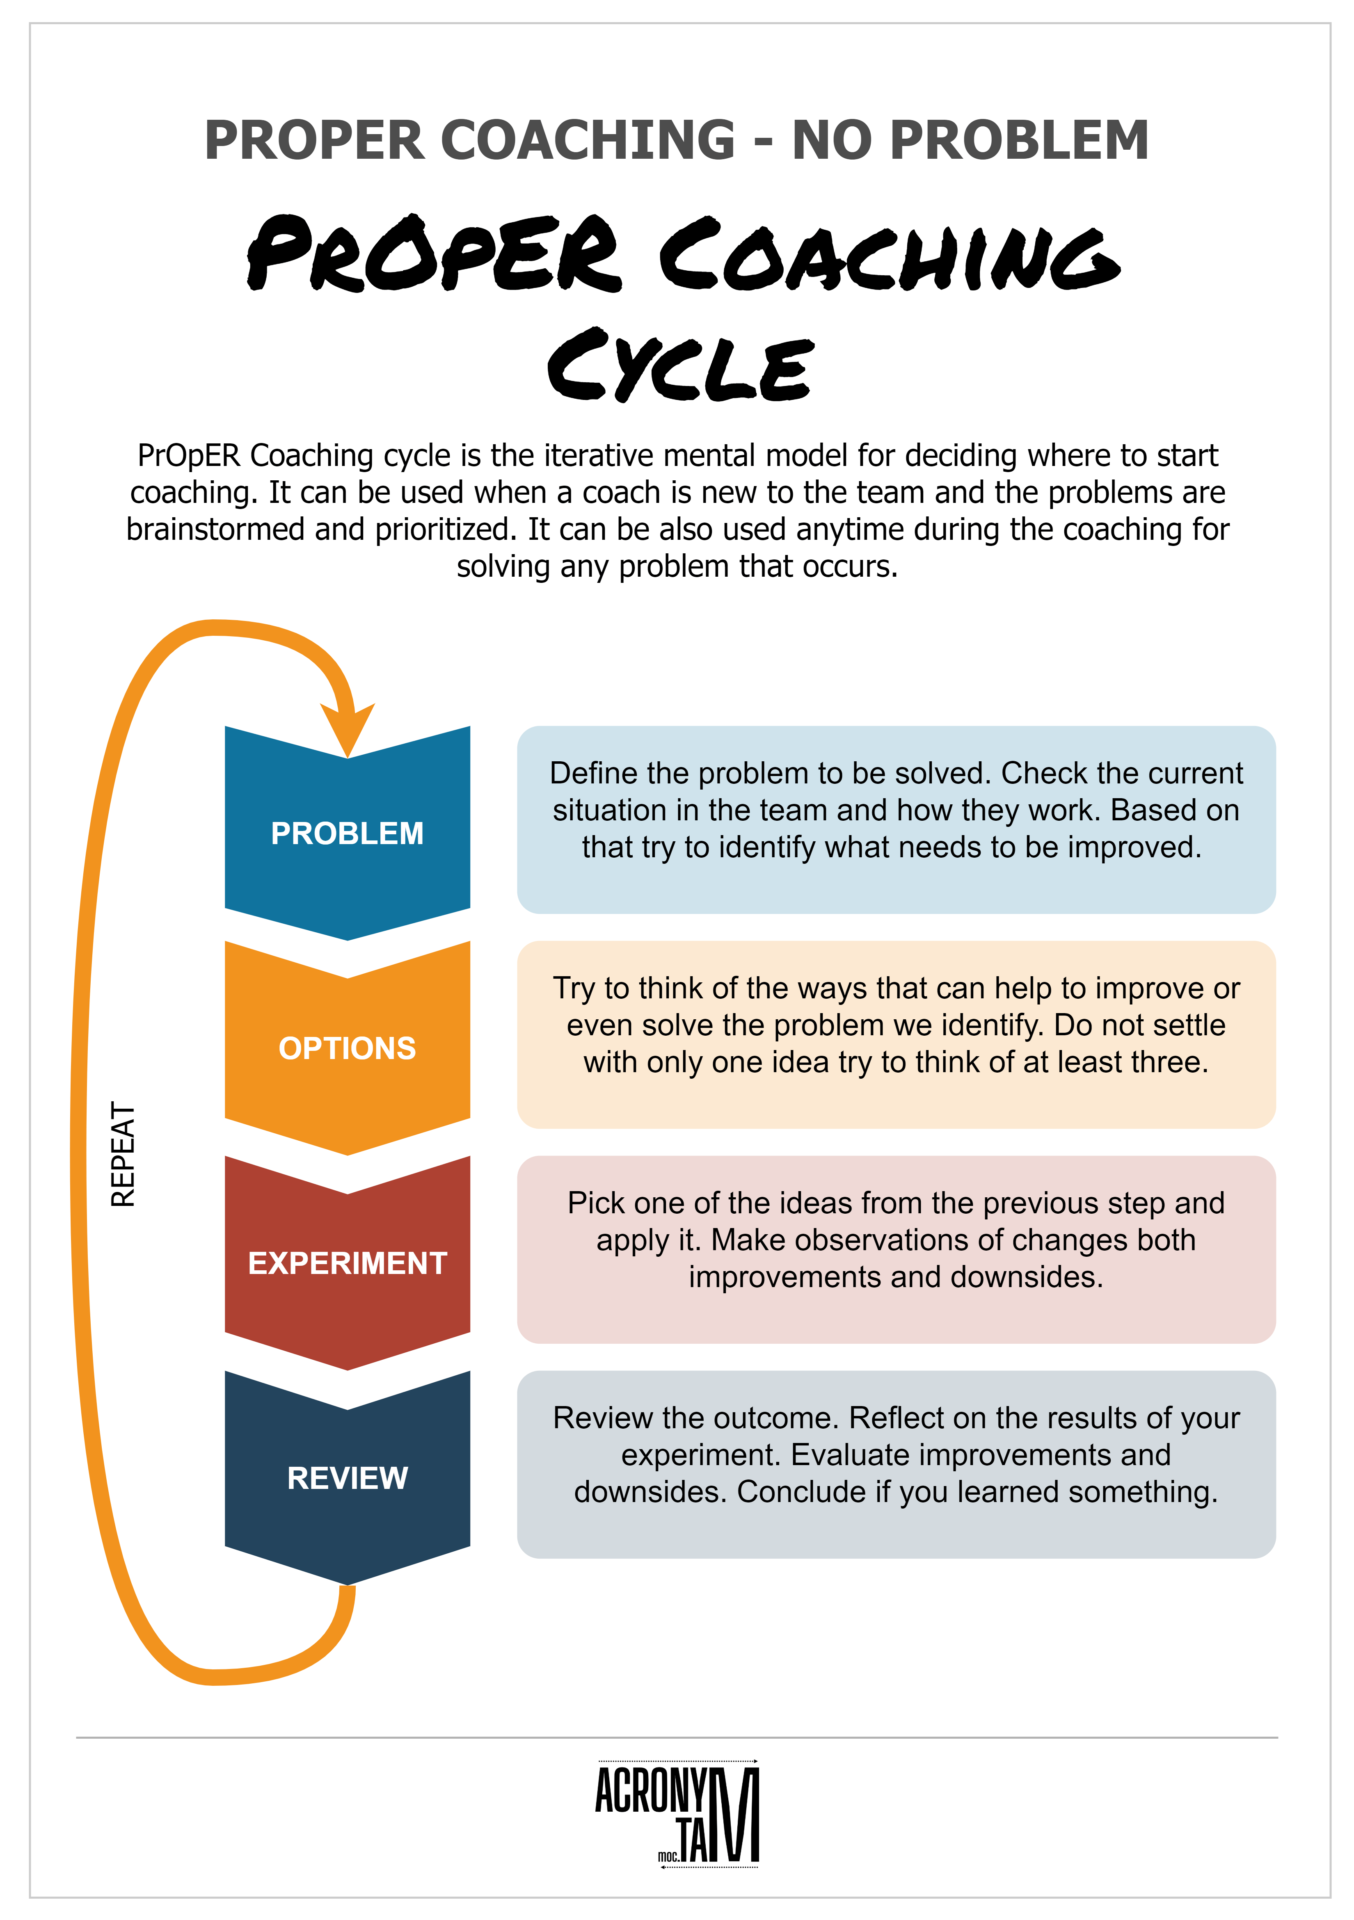 PrOpER Coaching Cycle